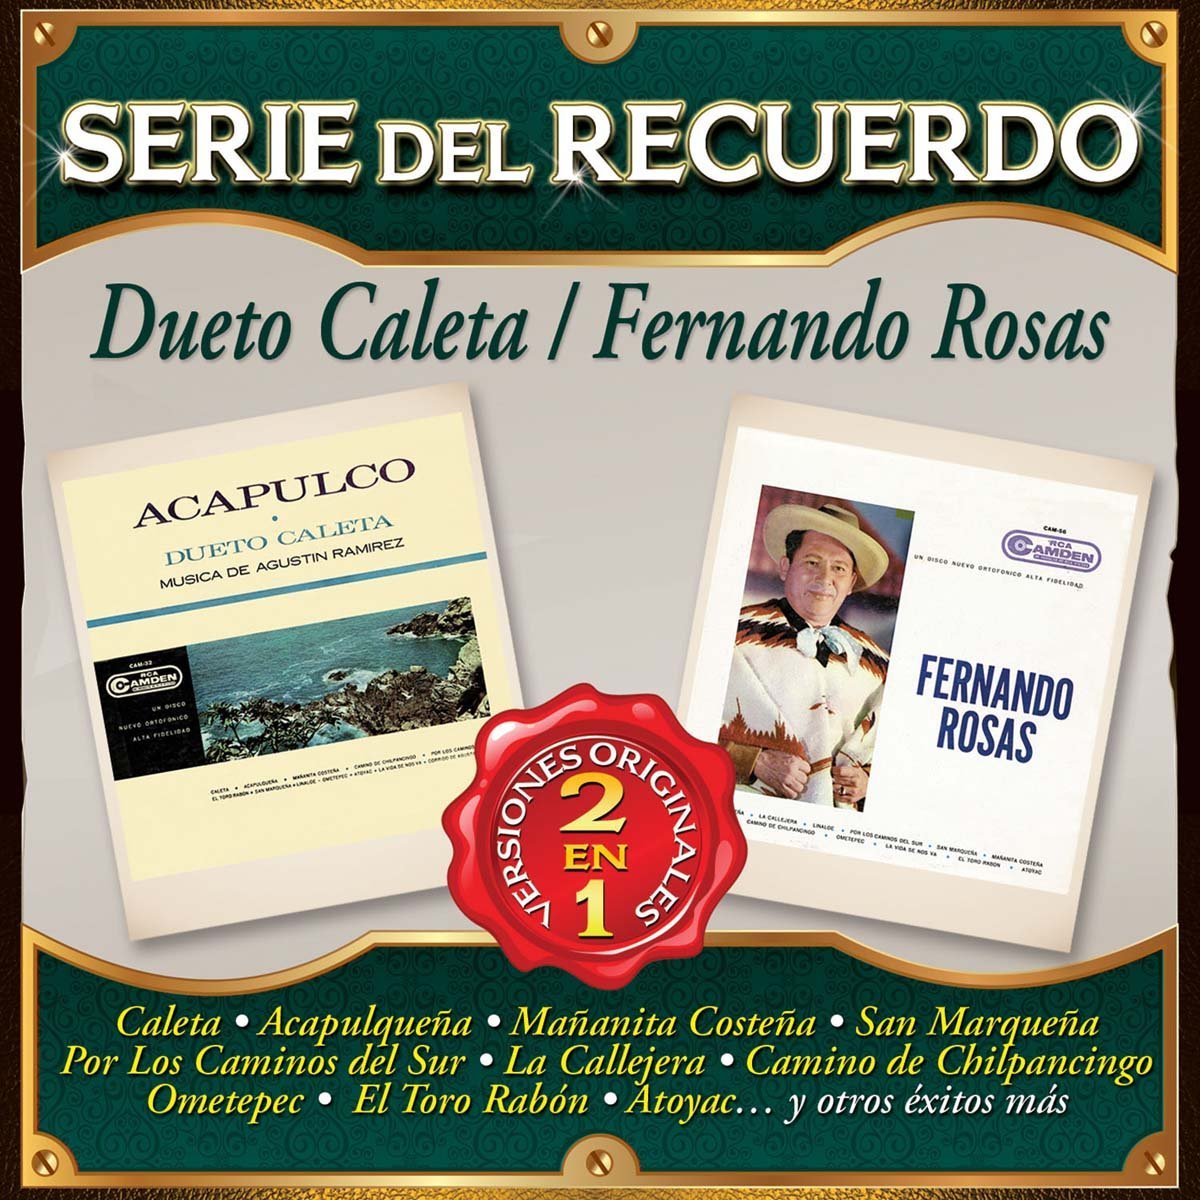 Cd Dueto Caletafernando Rosas Serie Del Recuerdo 2 en 1